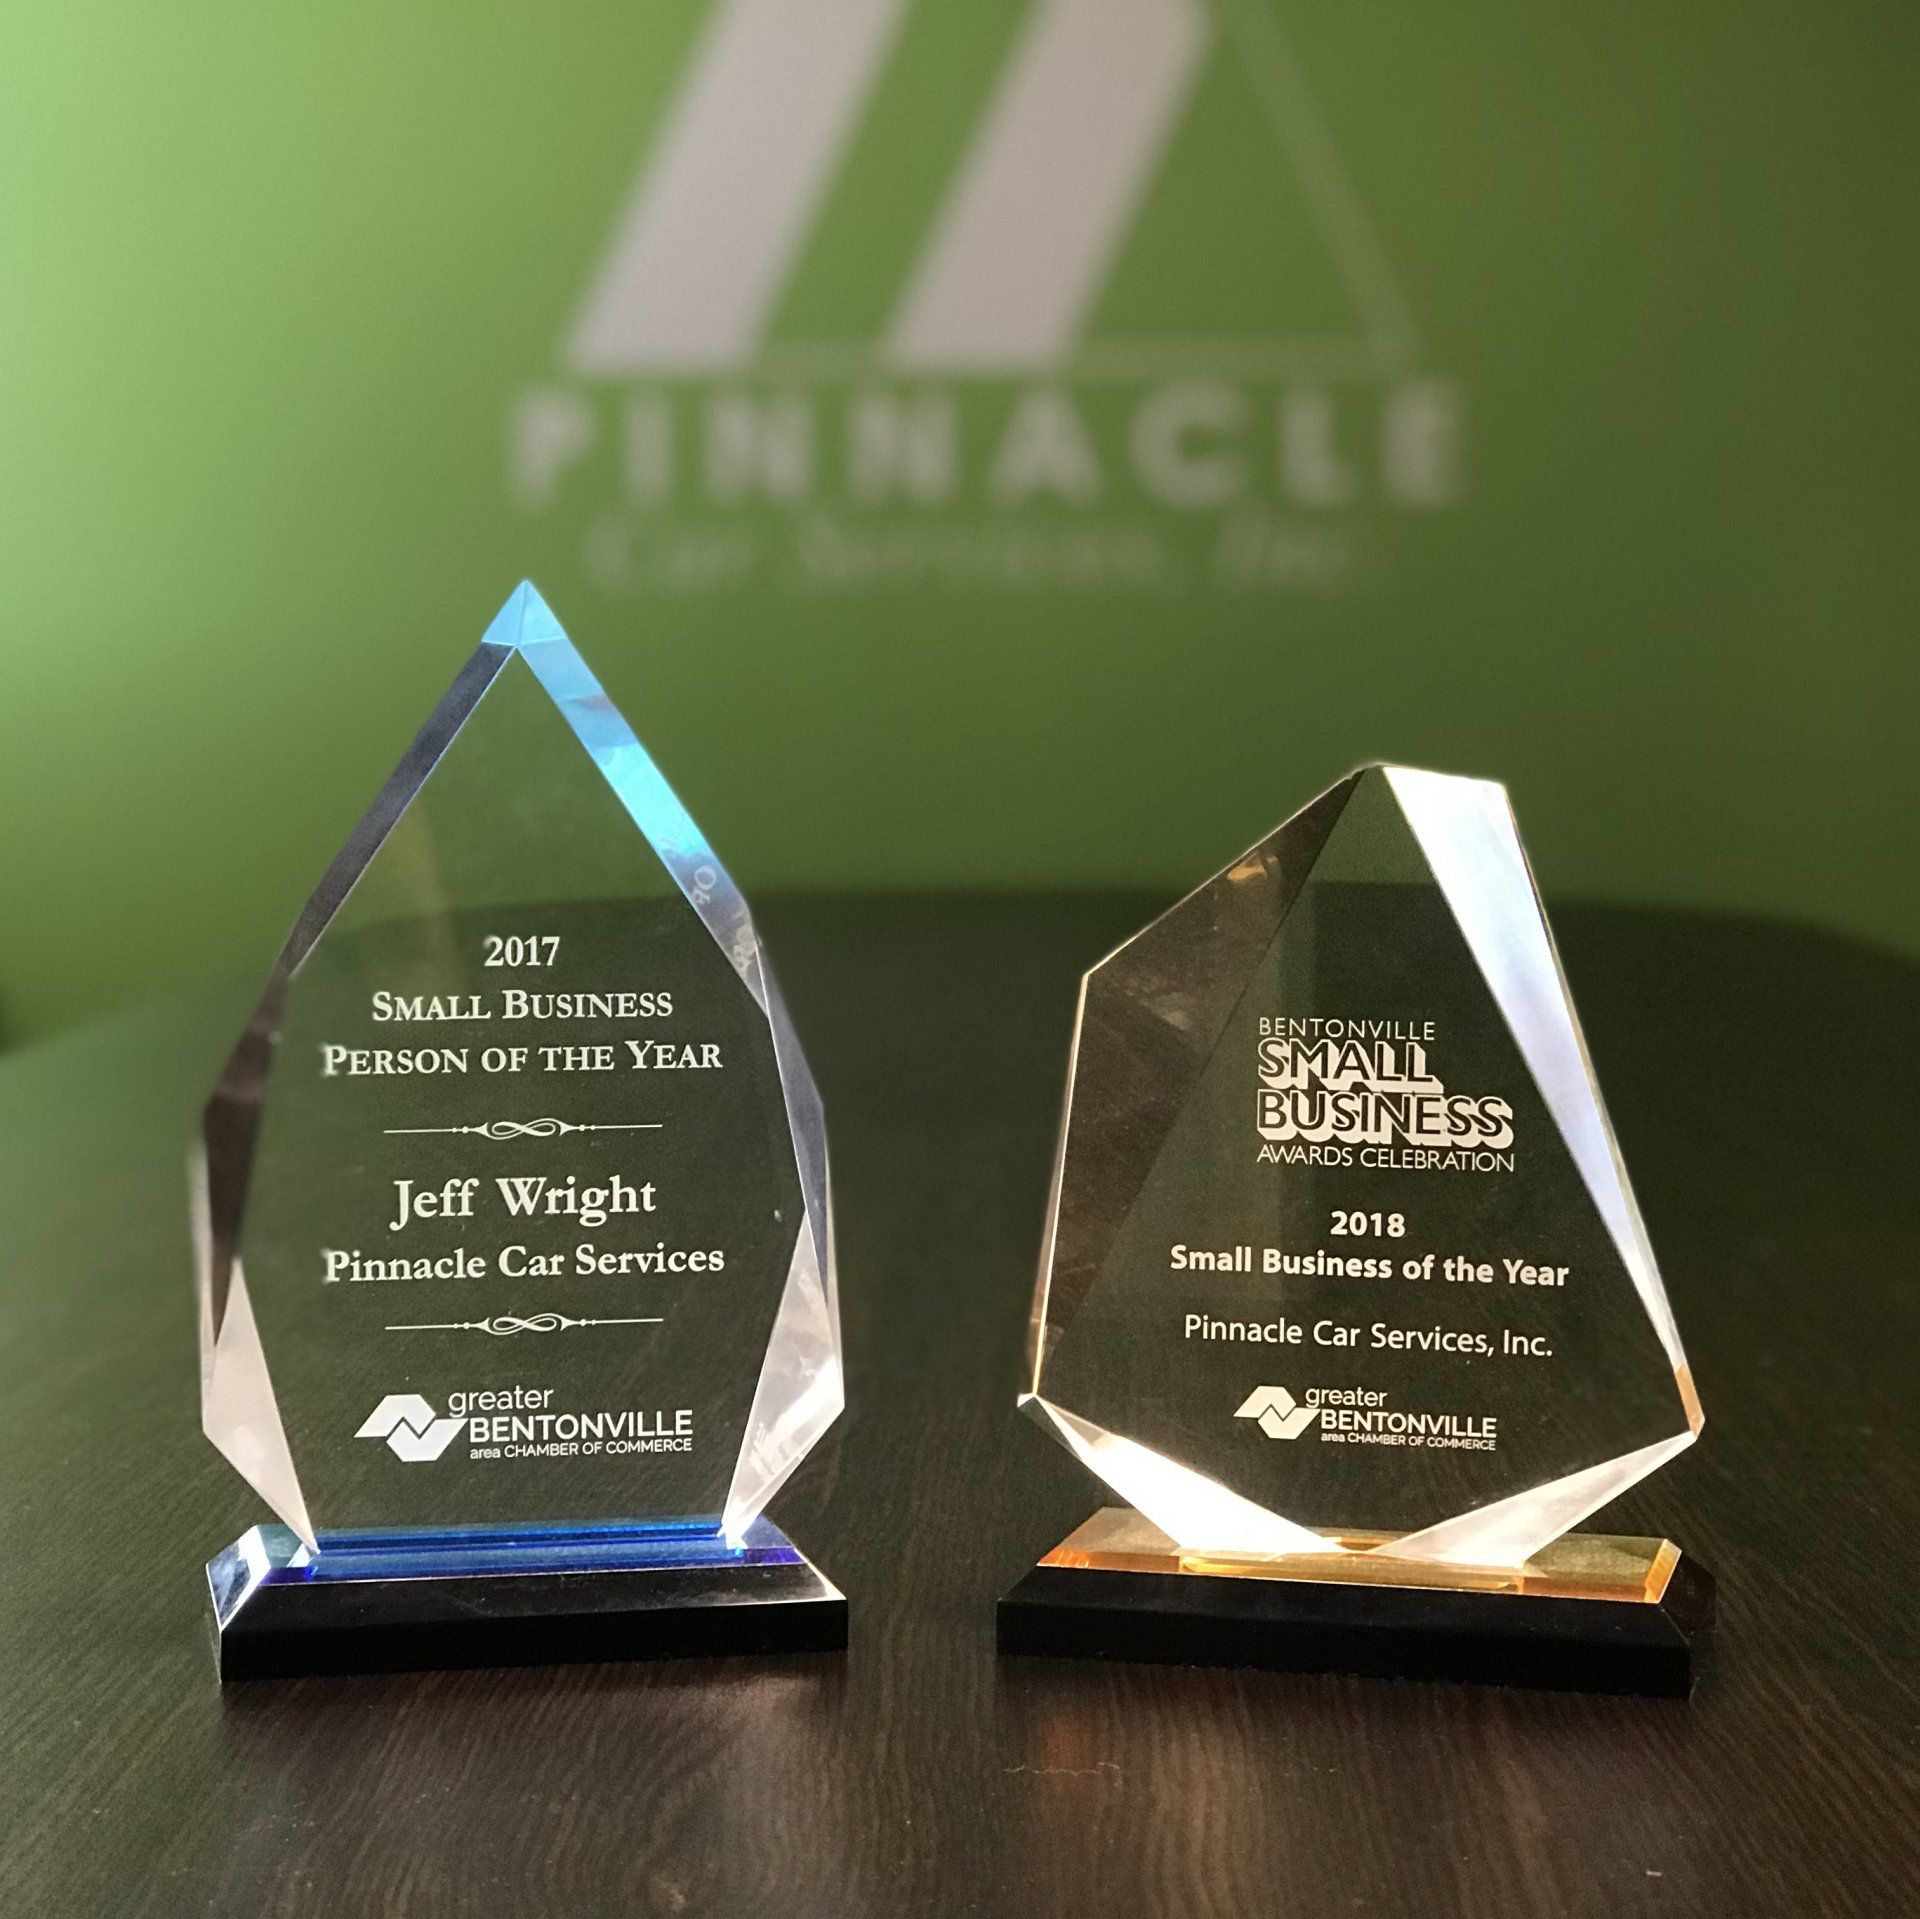 Pinnacle Car Services awards